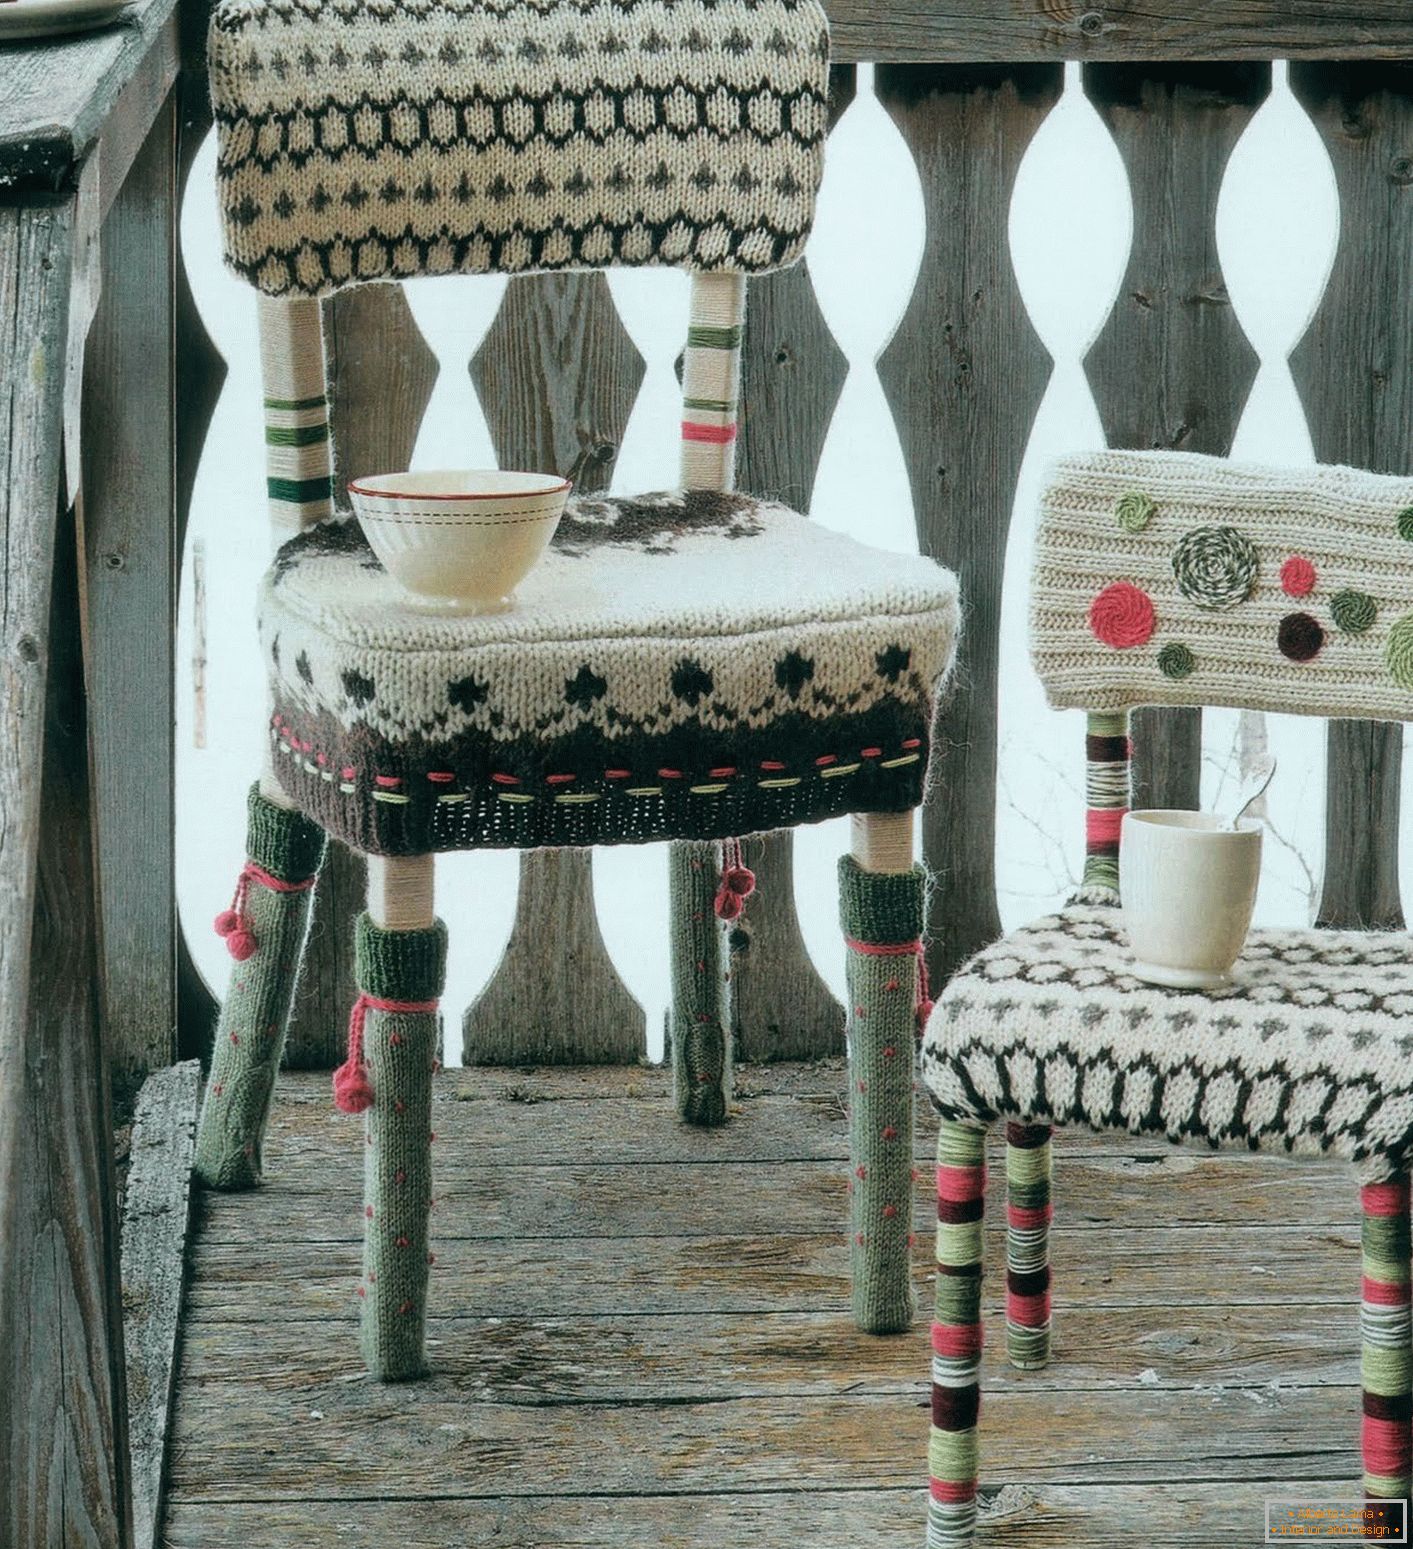 Stolička s pleteným krytom na sedadle, operadle a nohách